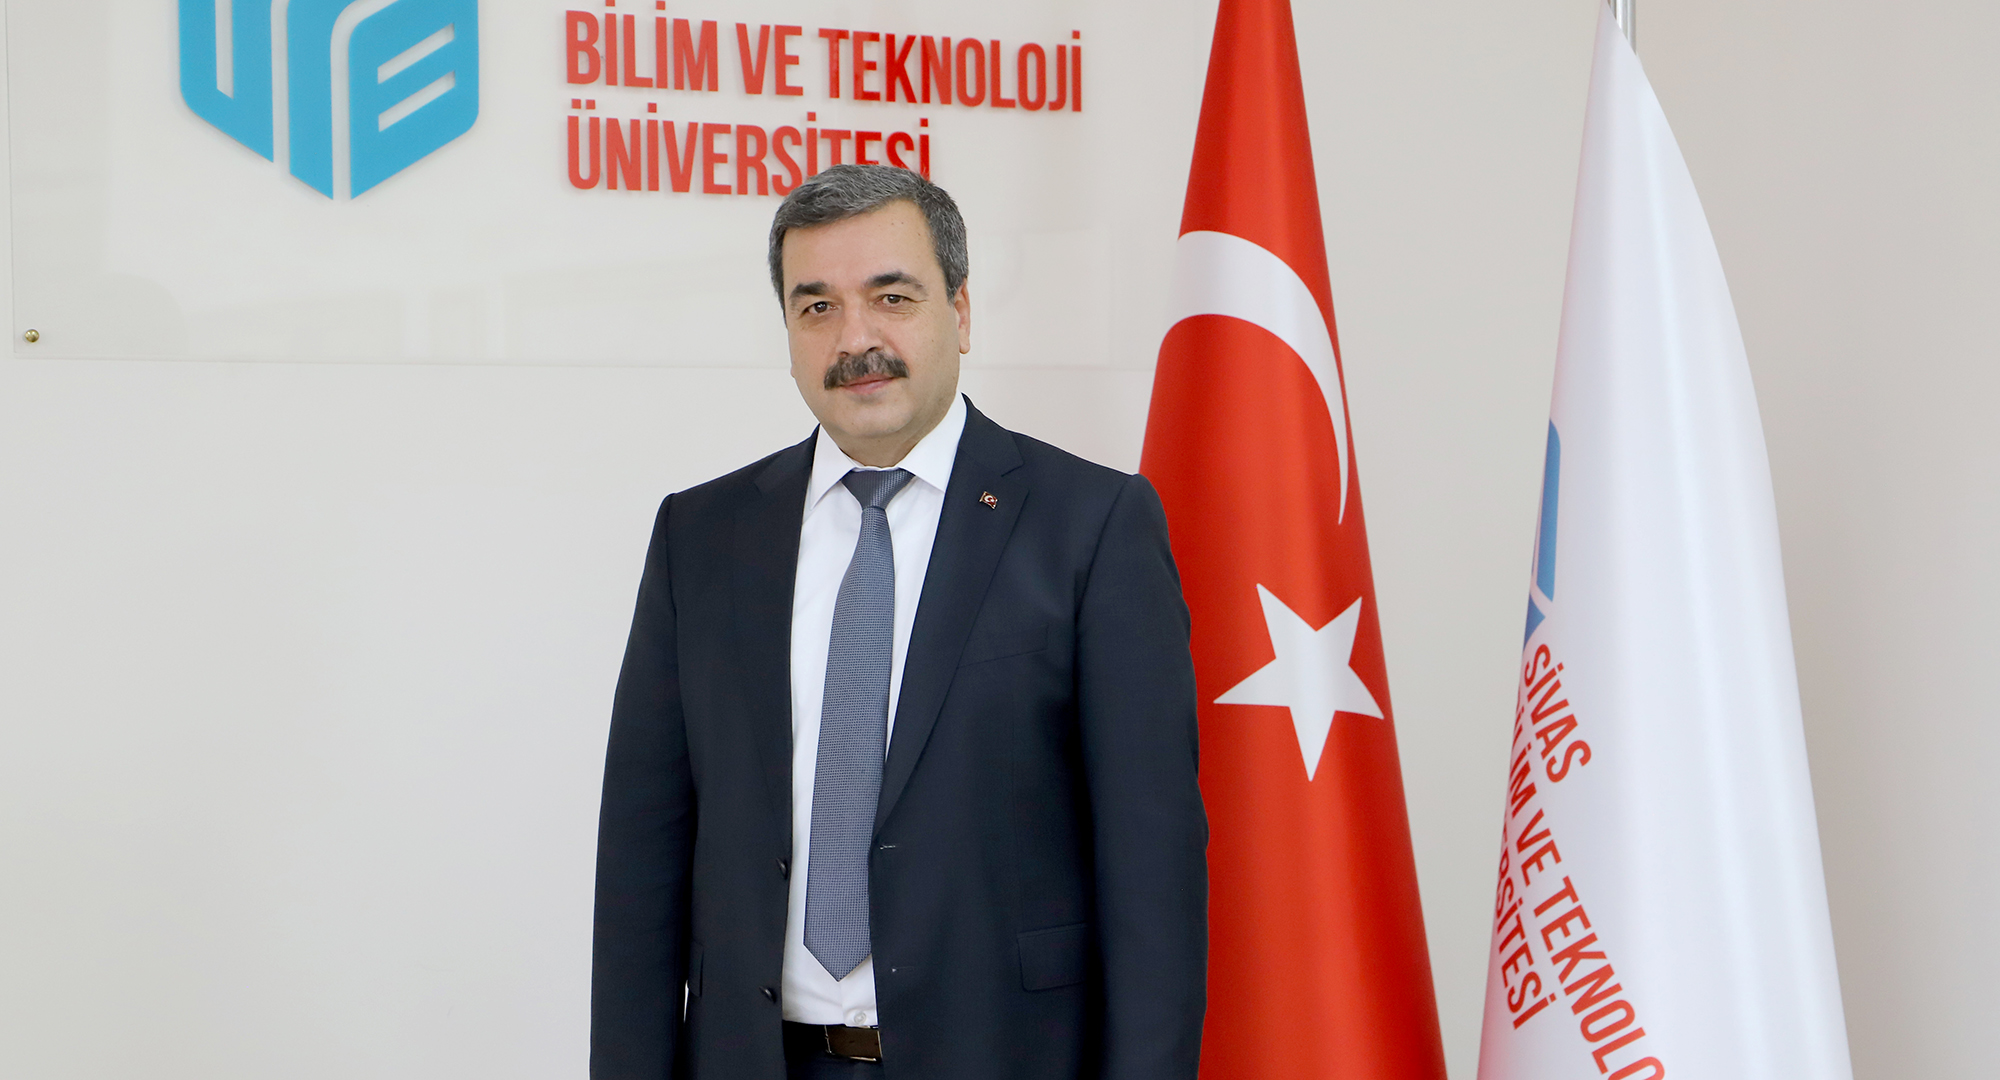 Sivas Bilim ve Teknoloji Üniversitesi (SBTÜ) Rektörü Prof. Dr. Mehmet Kul’un Ramazan Bayramı Mesajı